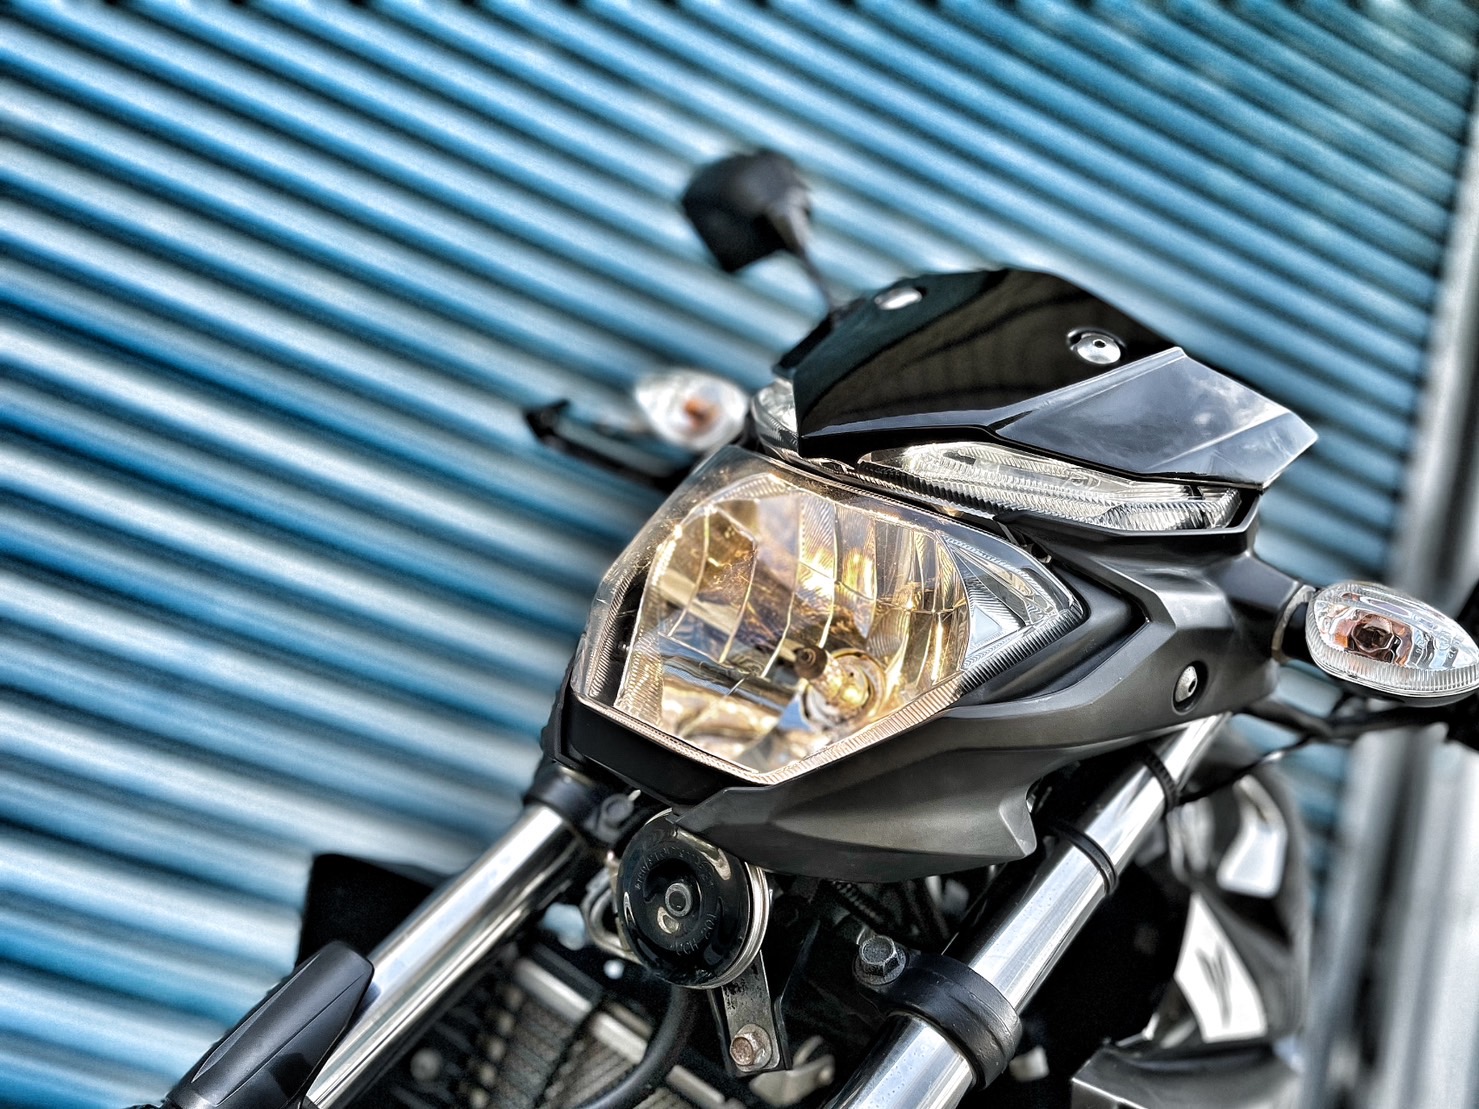 【小資族二手重機買賣】YAMAHA MT-03 - 「Webike-摩托車市」 基本改裝 無摔車無事故 小資族二手重機買賣